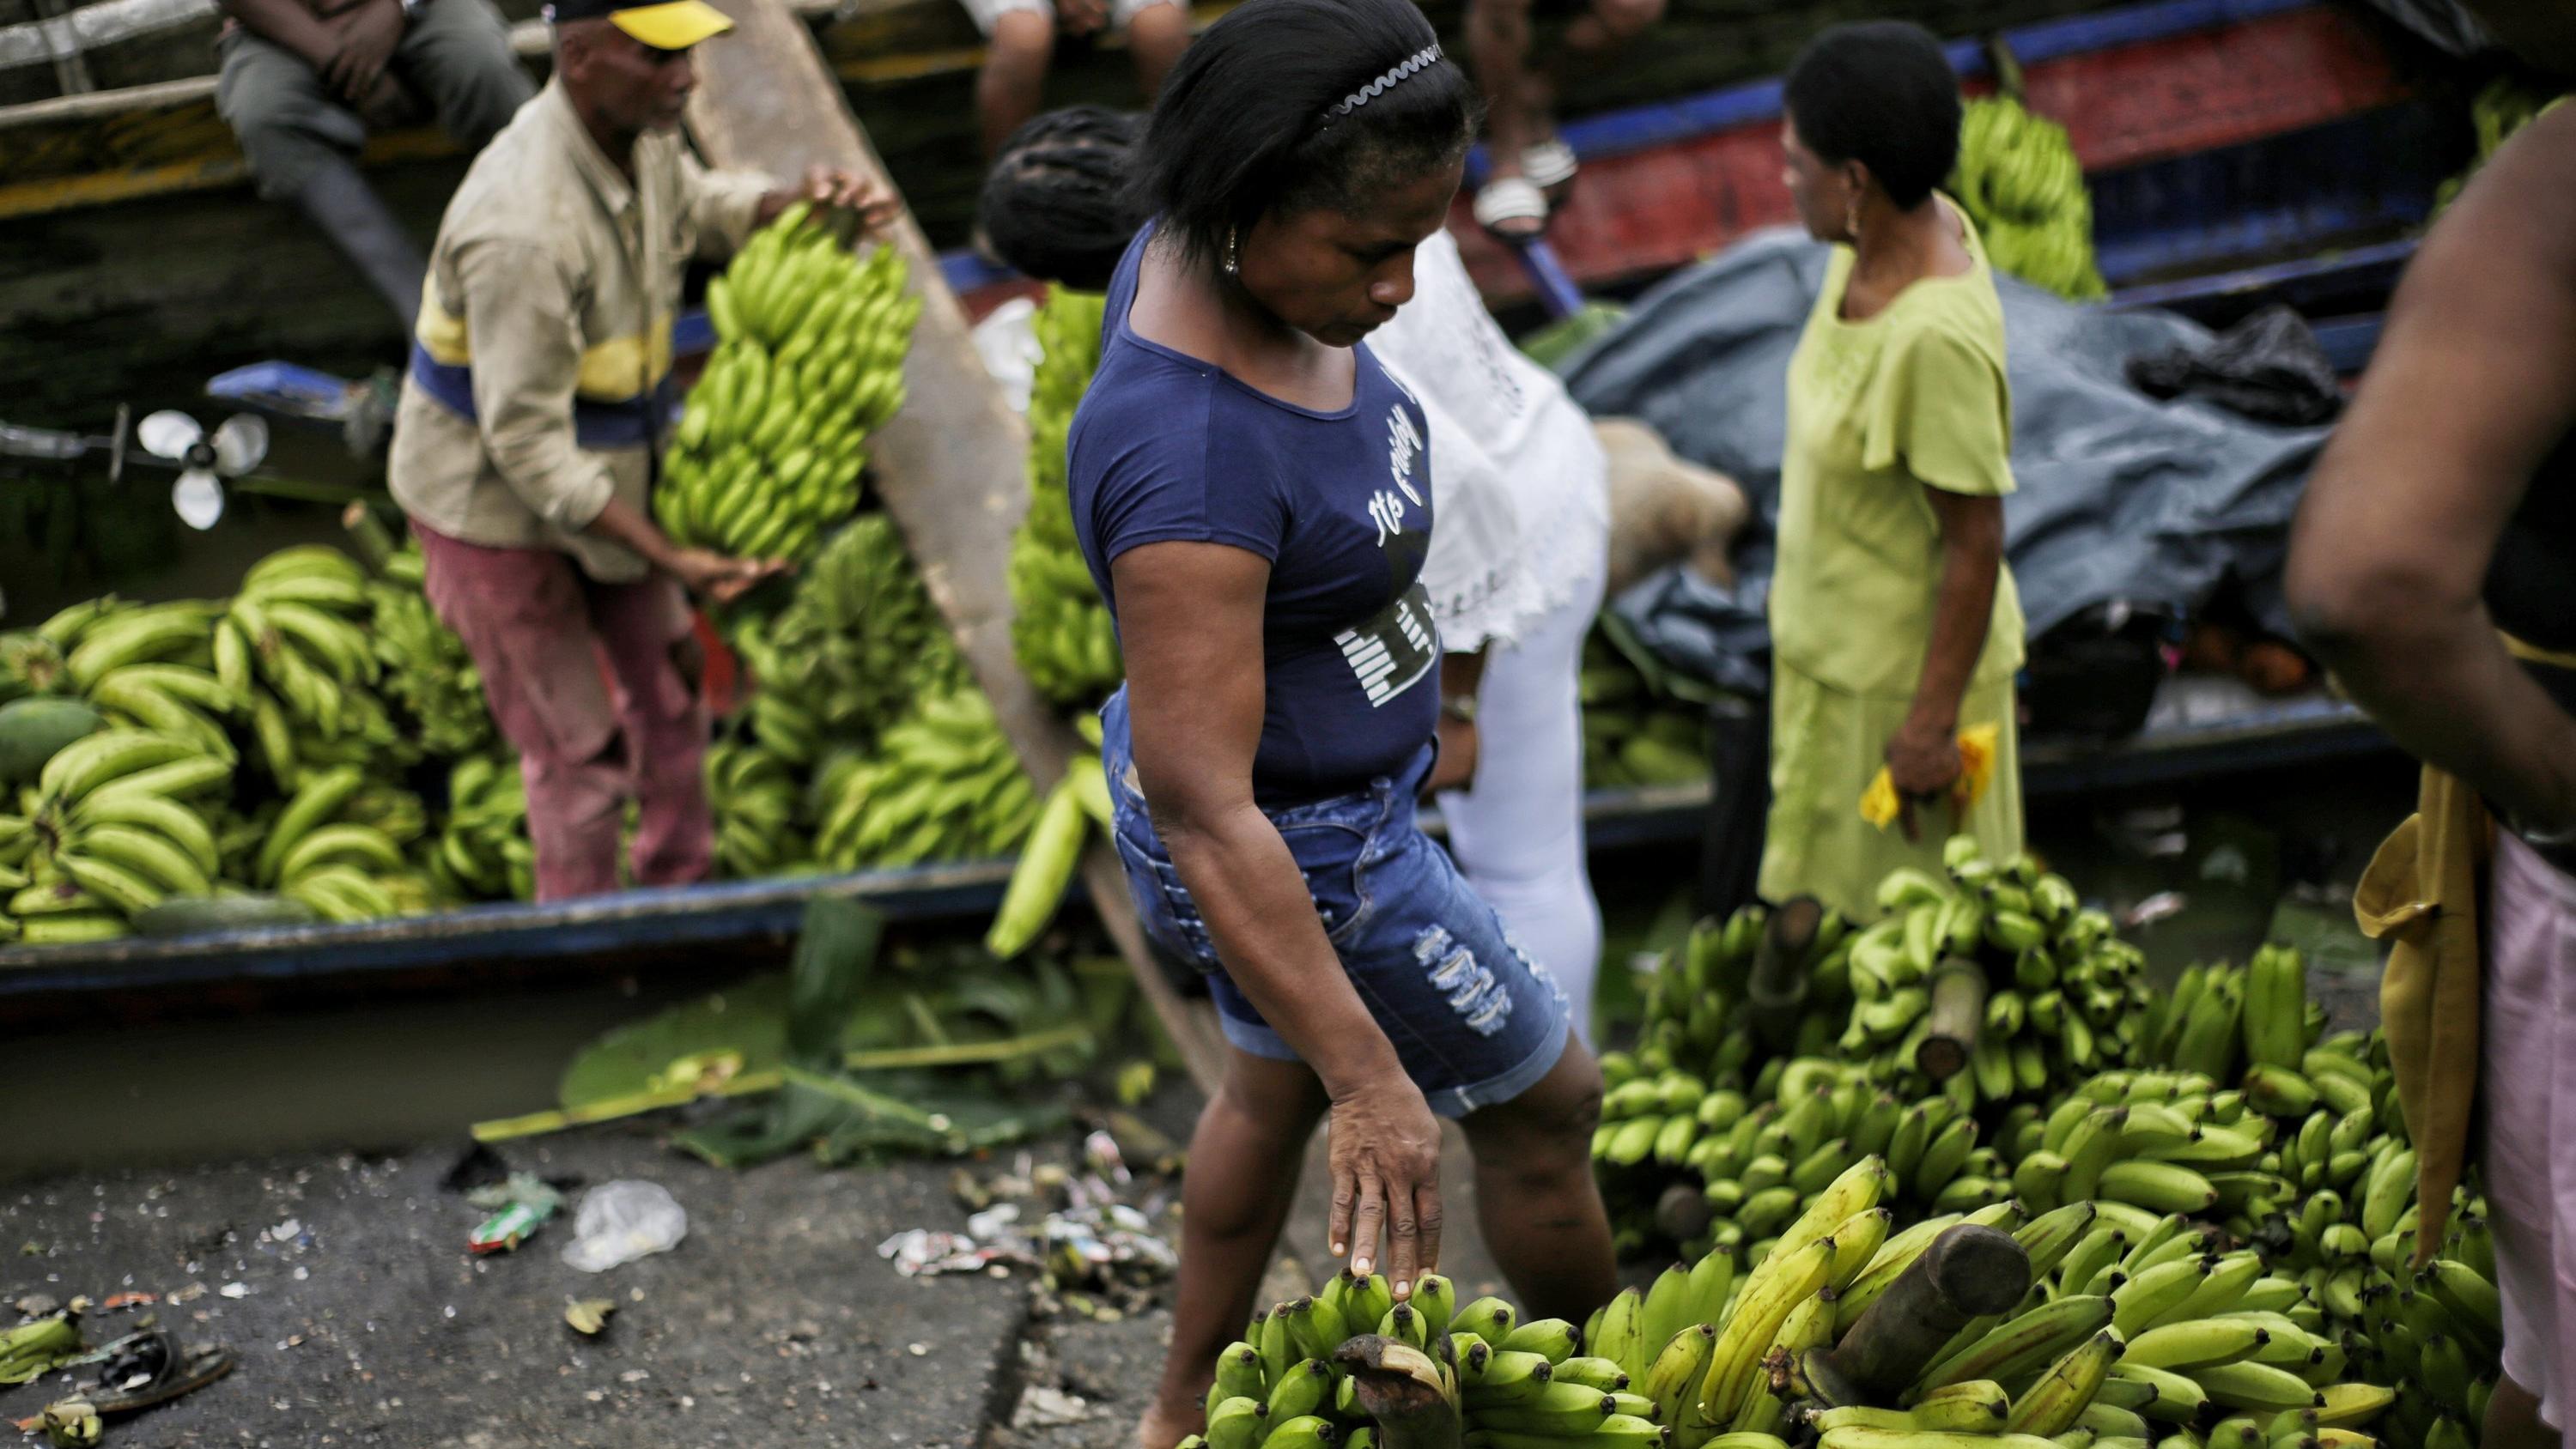 ARCHIV - 03.04.2019, Kolumbien, Quibdo: Eine Frau begutachtet Bananen auf einem Markt in einer ländlichen Region Kolumbiens. Bananenplantagen in Kolumbien sind von einem Pilz befallen, der infizierte Pflanzen absterben lässt. Betroffen sei die Sorte 